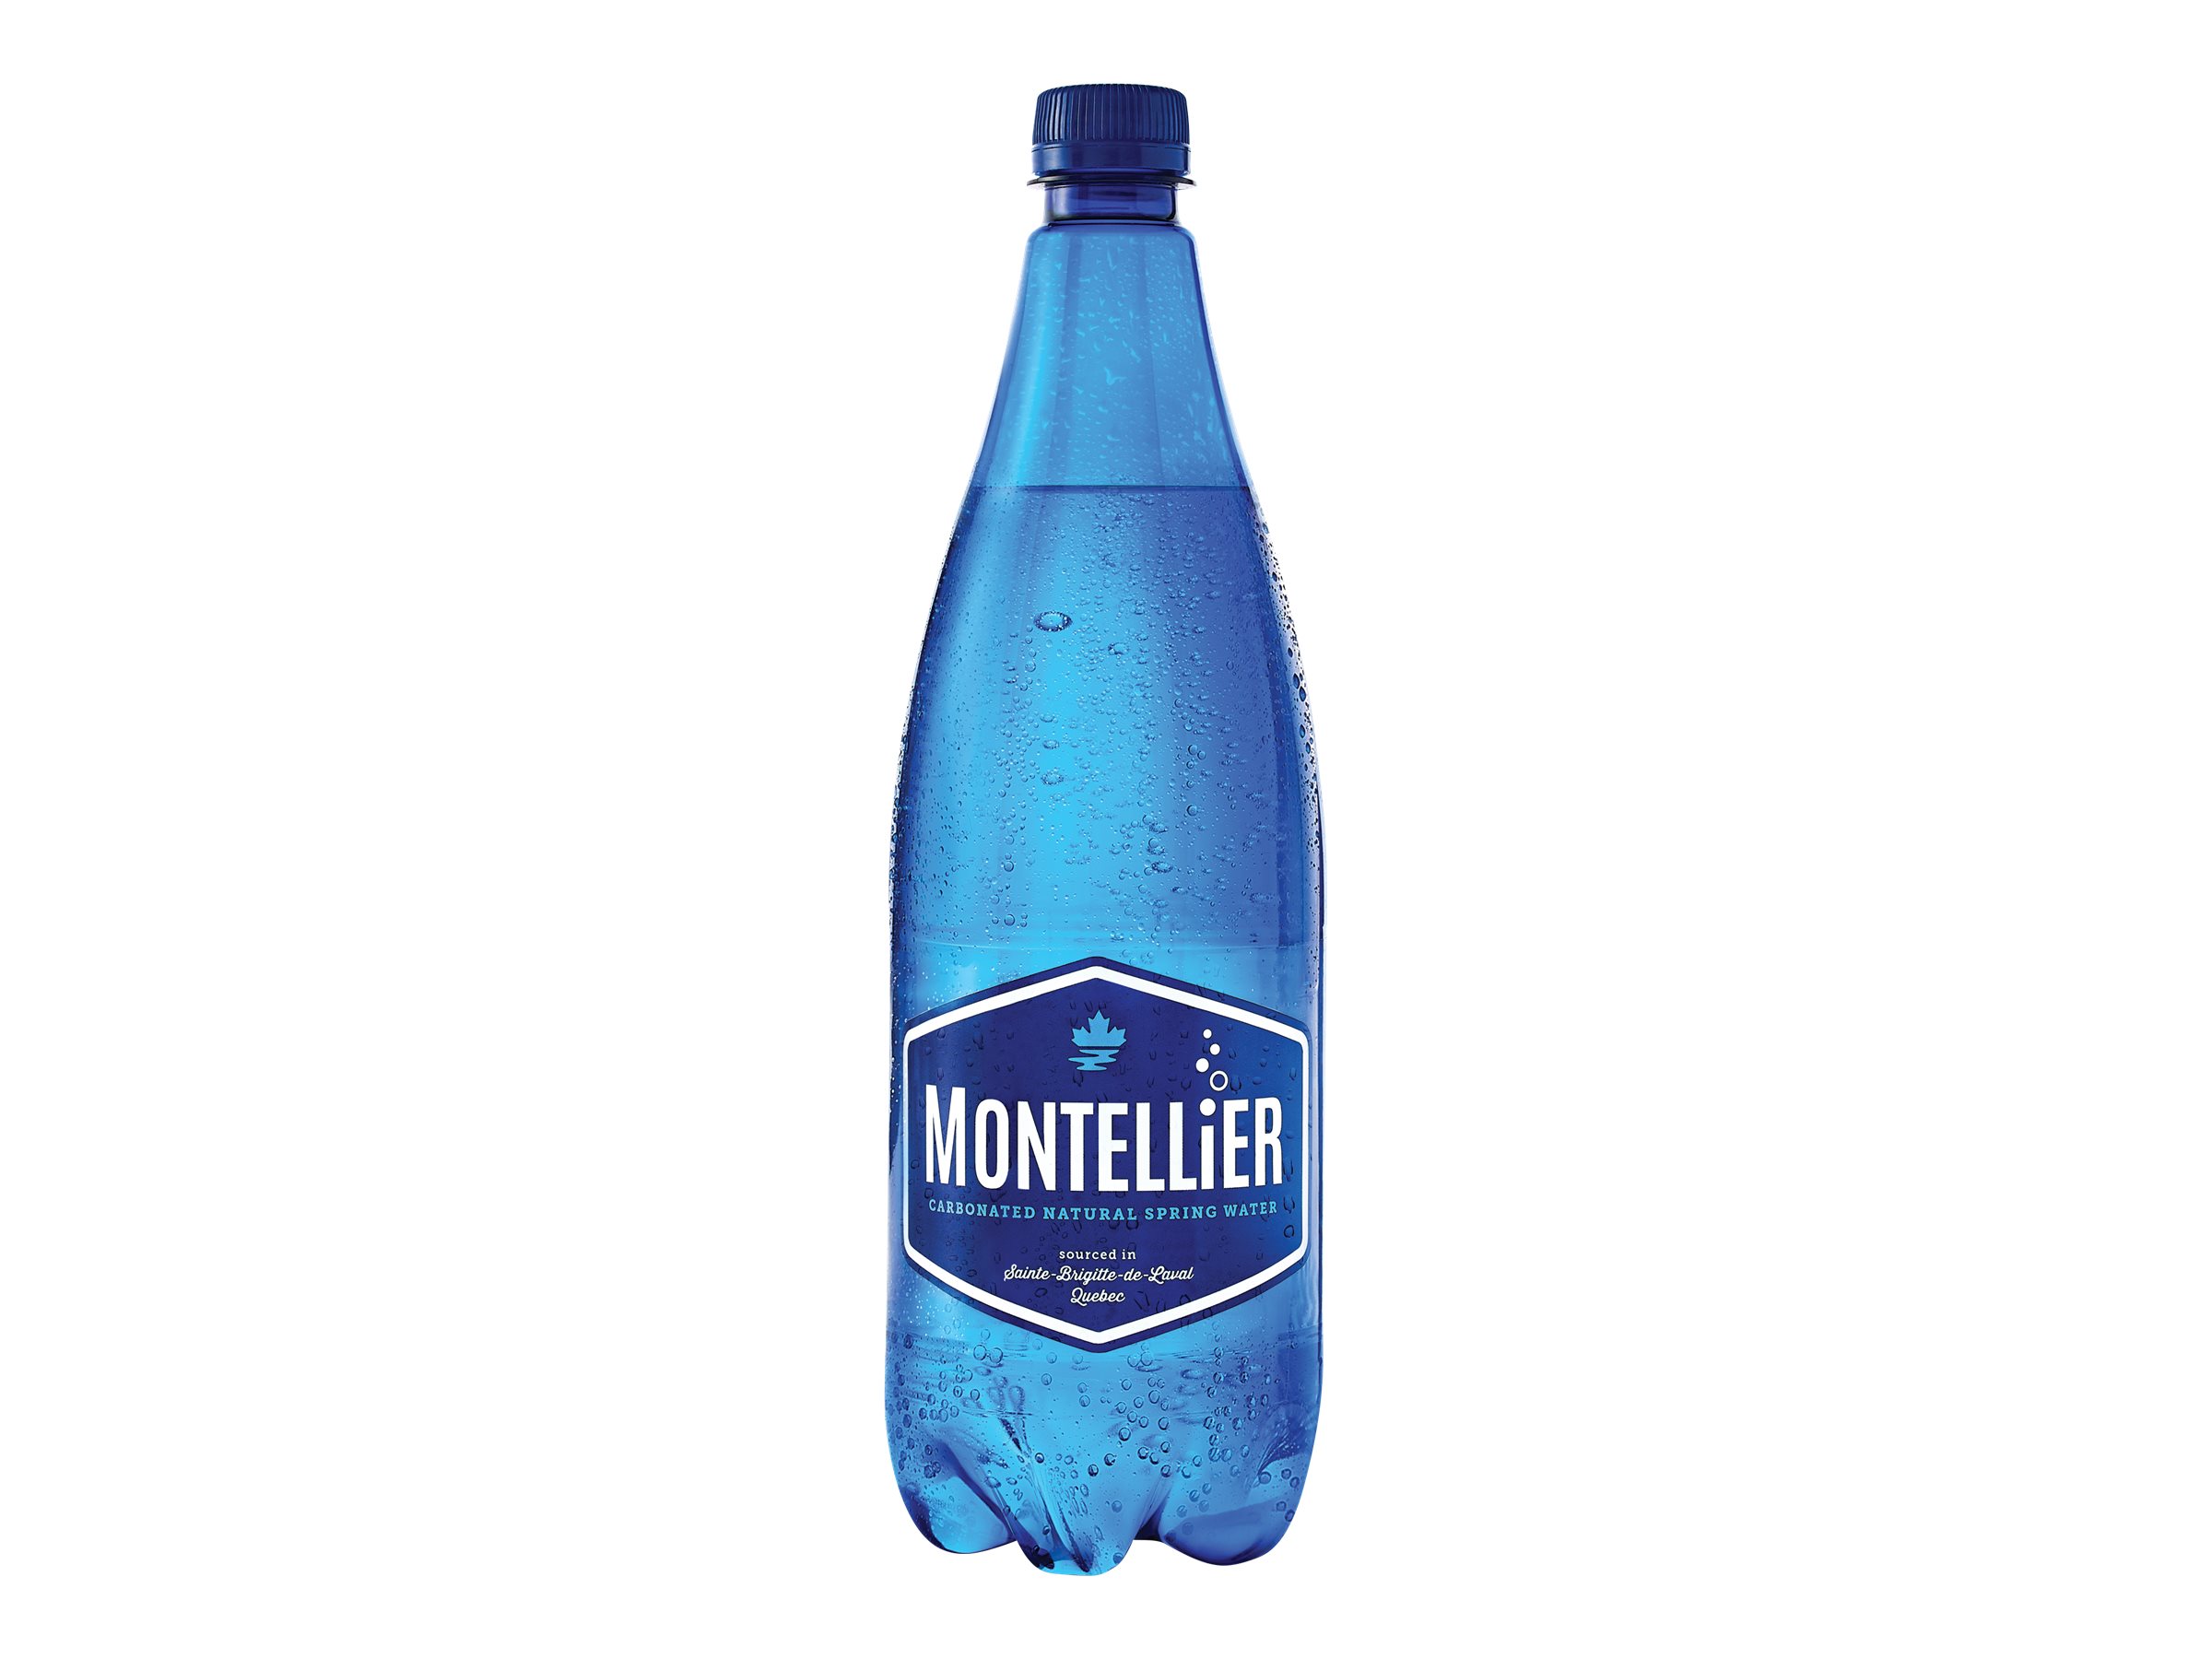 Montellier Sparkling Spring Water - 1L